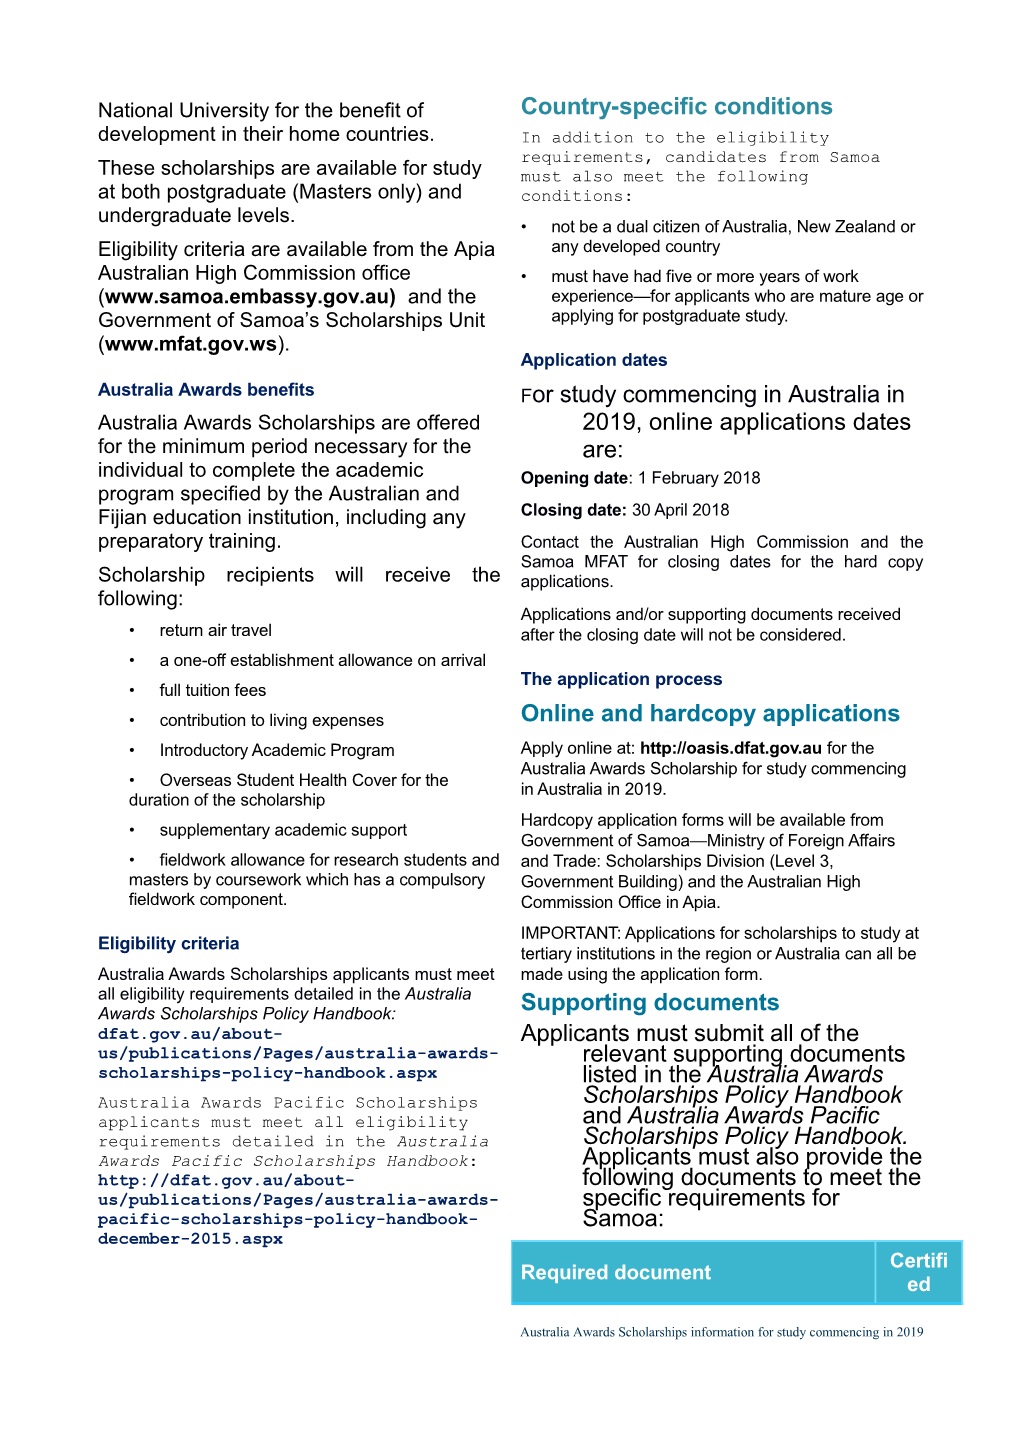 Applying for an Australia Awards Scholarships